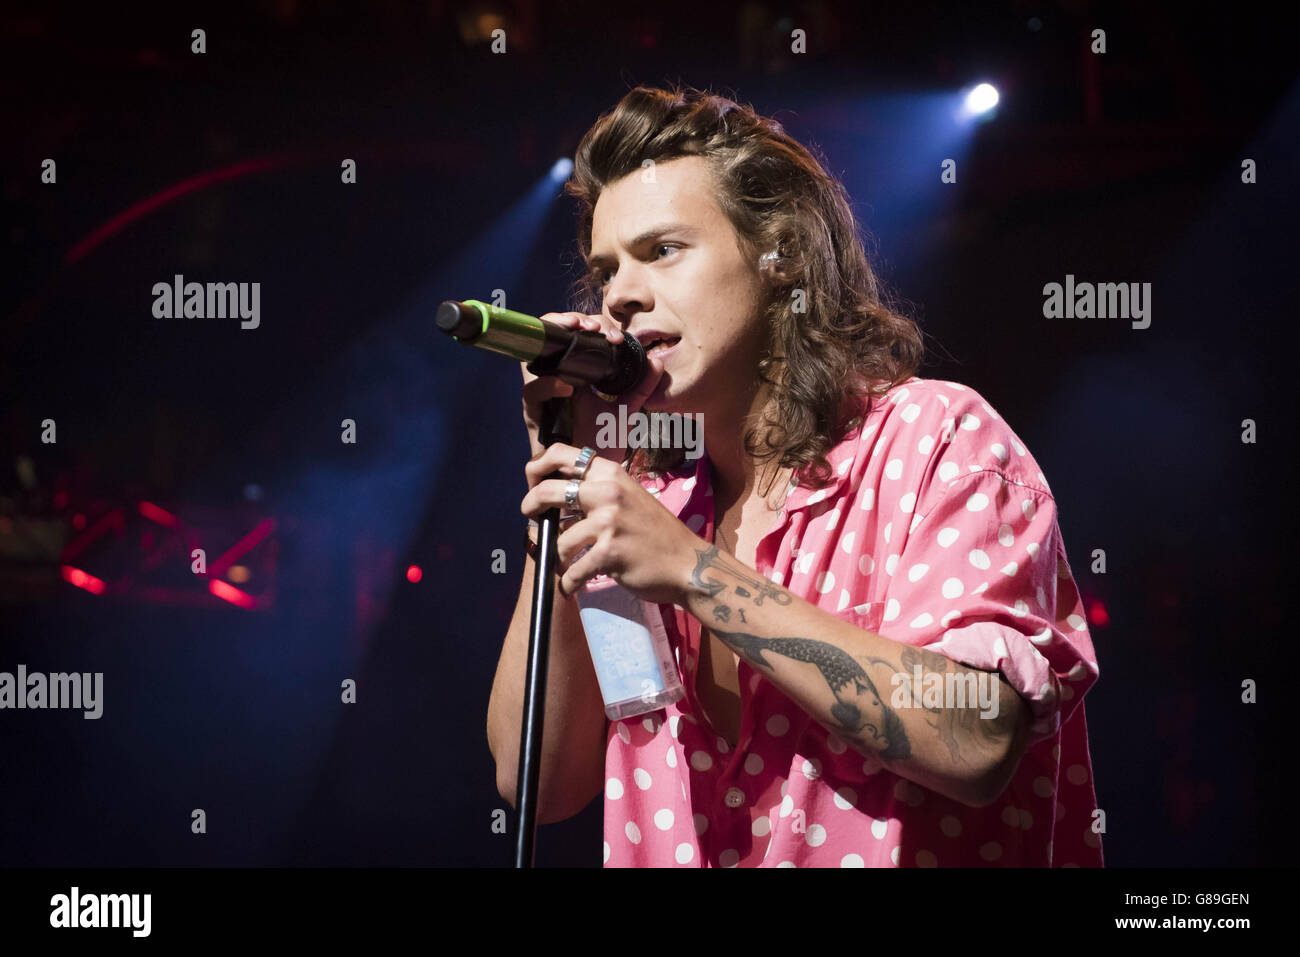 Festival de Música de Apple 2015 - Londres. Harry Styles of One Direction actuando en el festival de música de Apple en la Roundhouse en Camden, Londres. Foto de stock